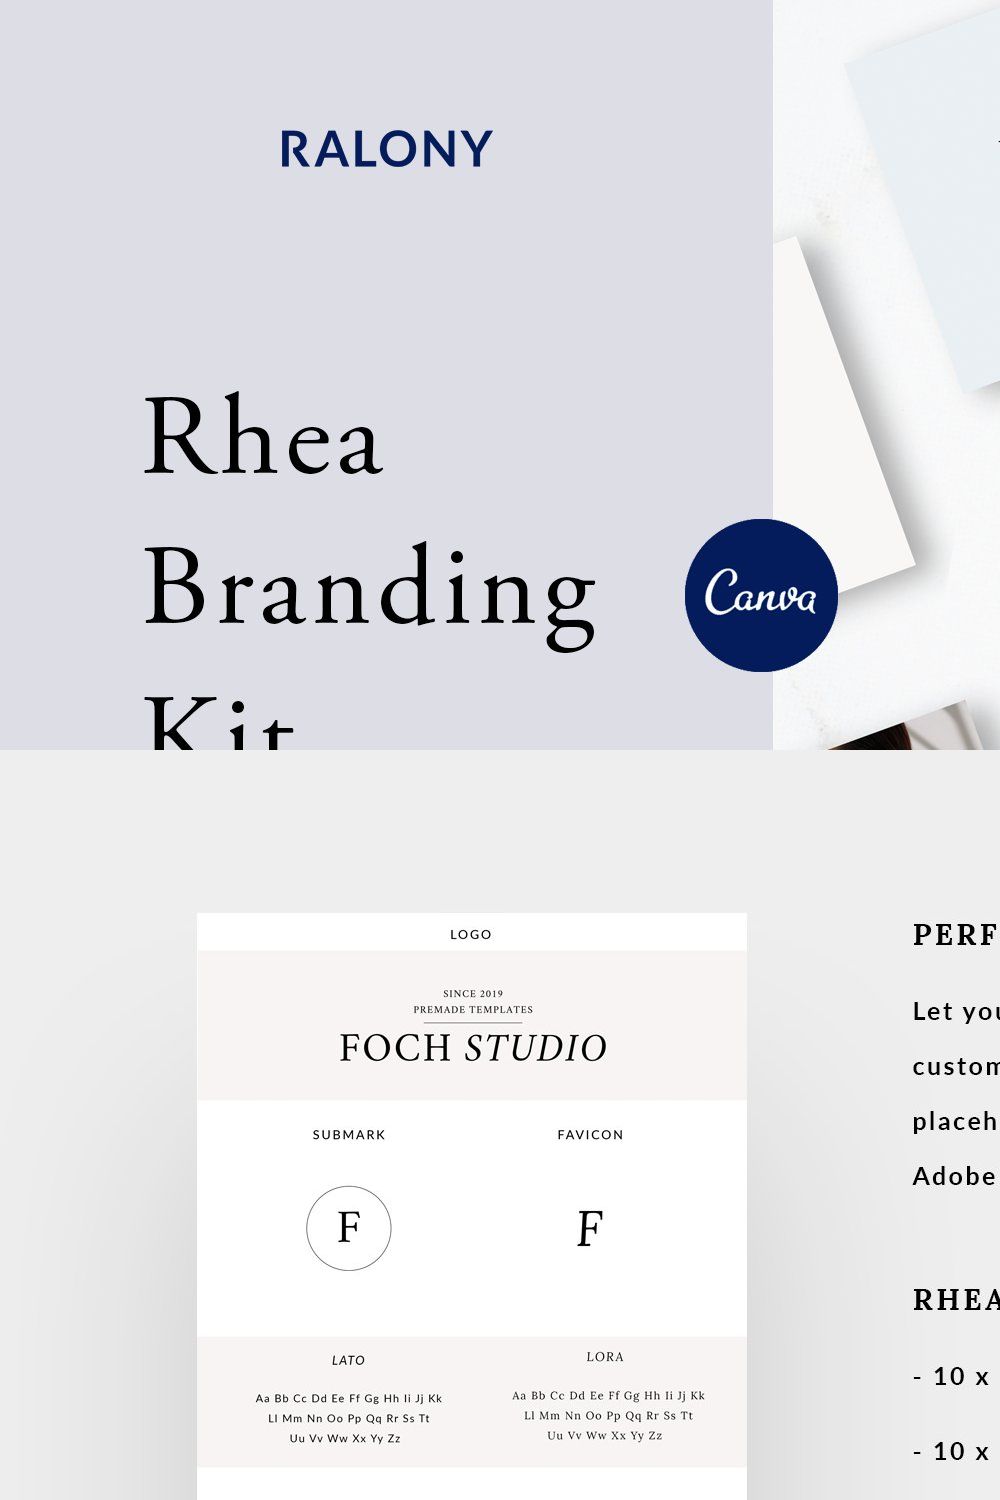 Rhea Branding Kit pinterest preview image.